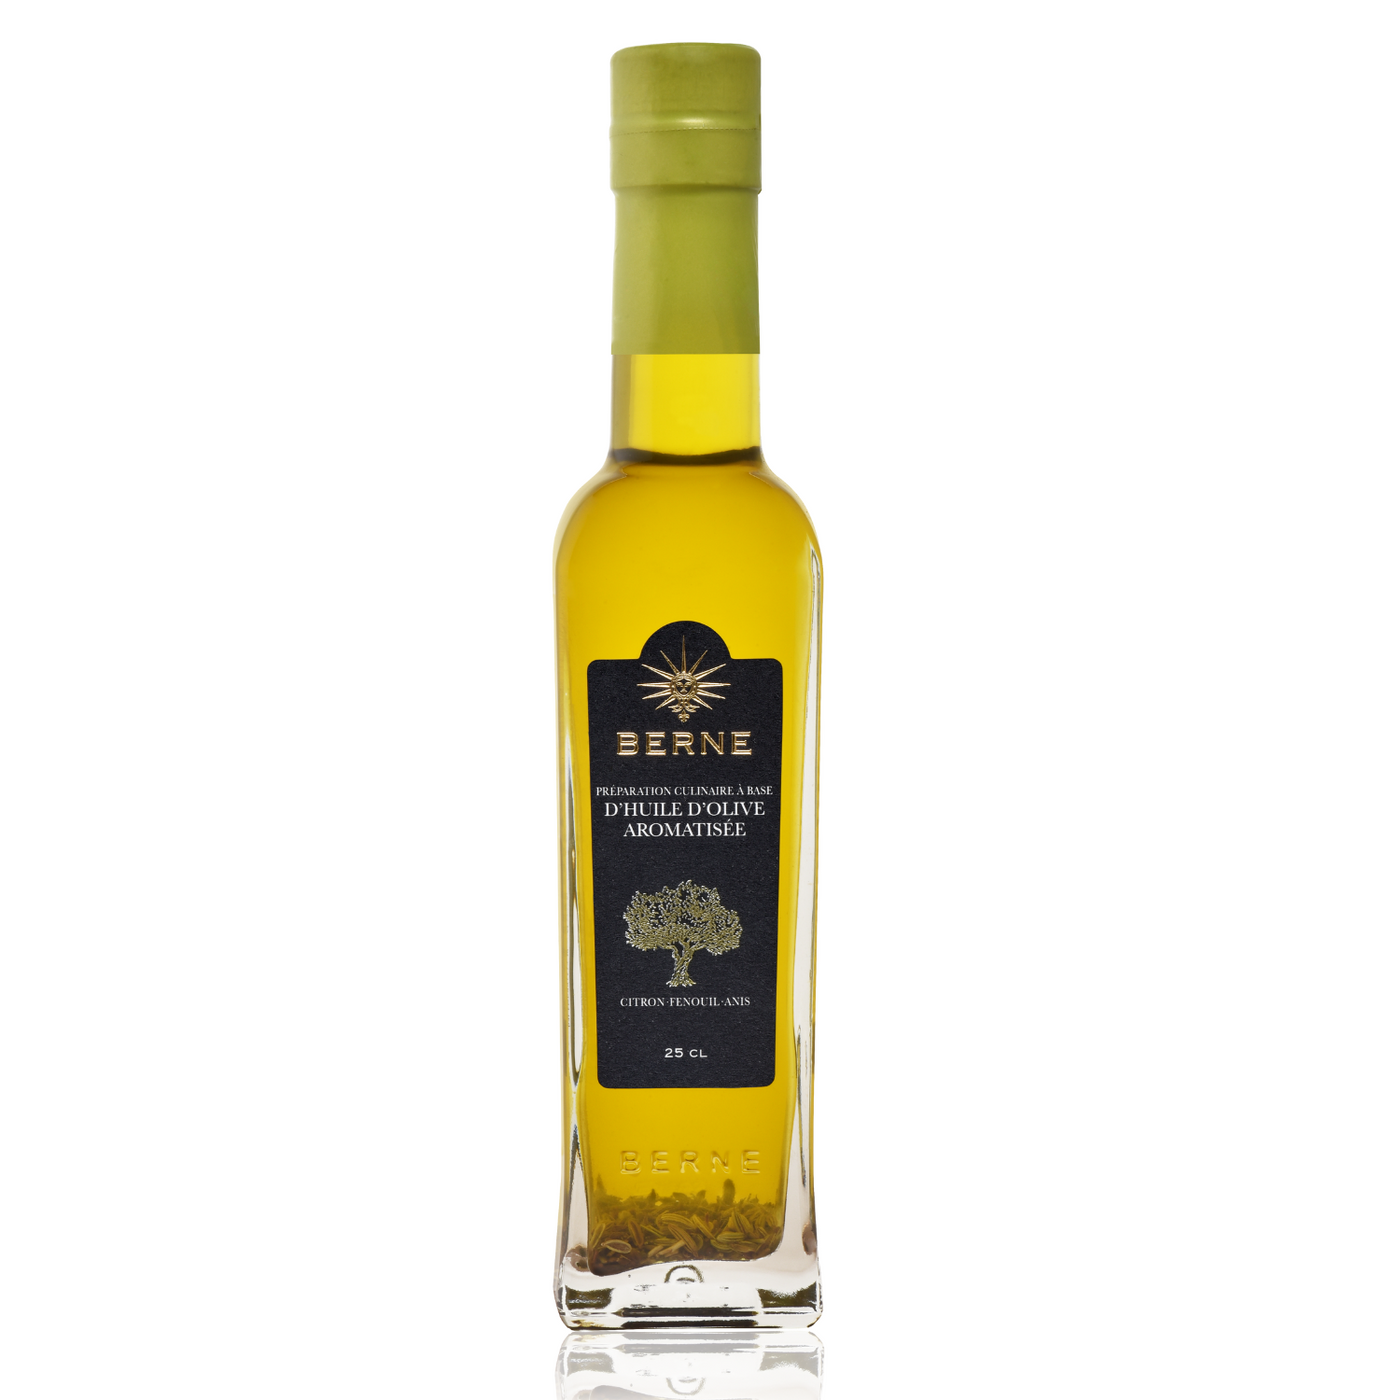 Berne - Lemon, Fennel & Anise Olive Oil